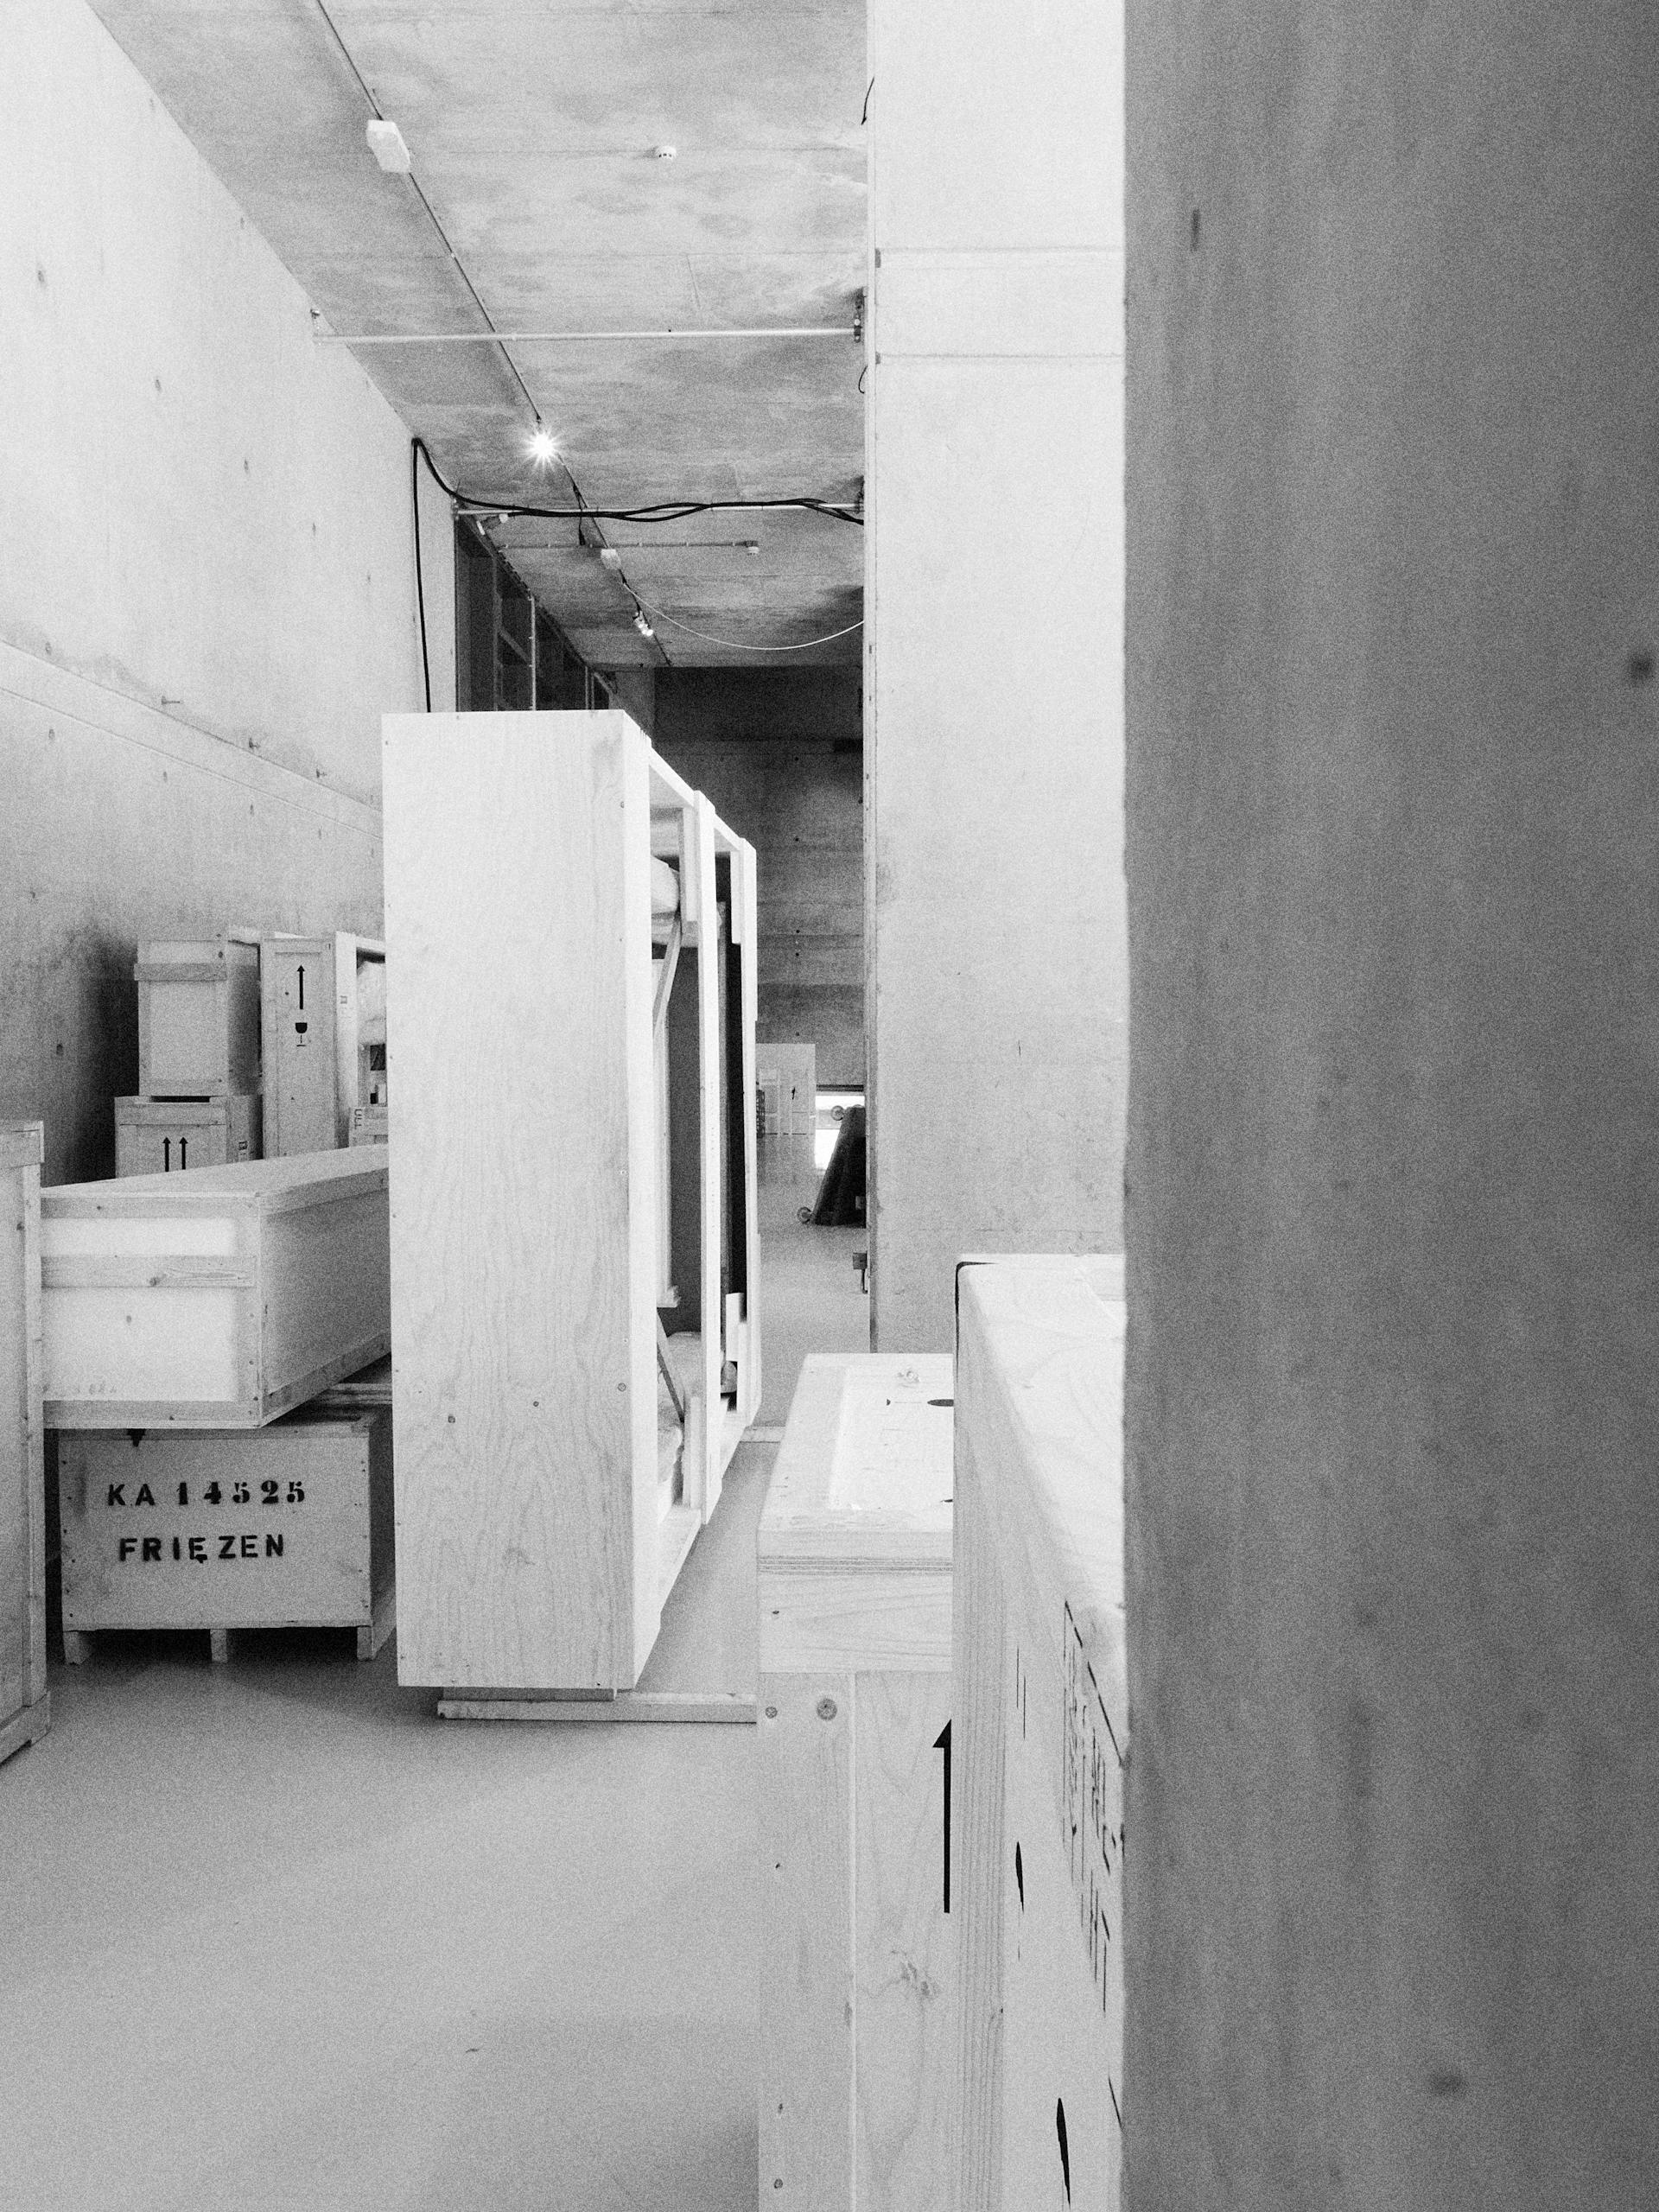 Onderdelen van stijlkamers, verpakt in kisten. Foto Johannes Schwartz 